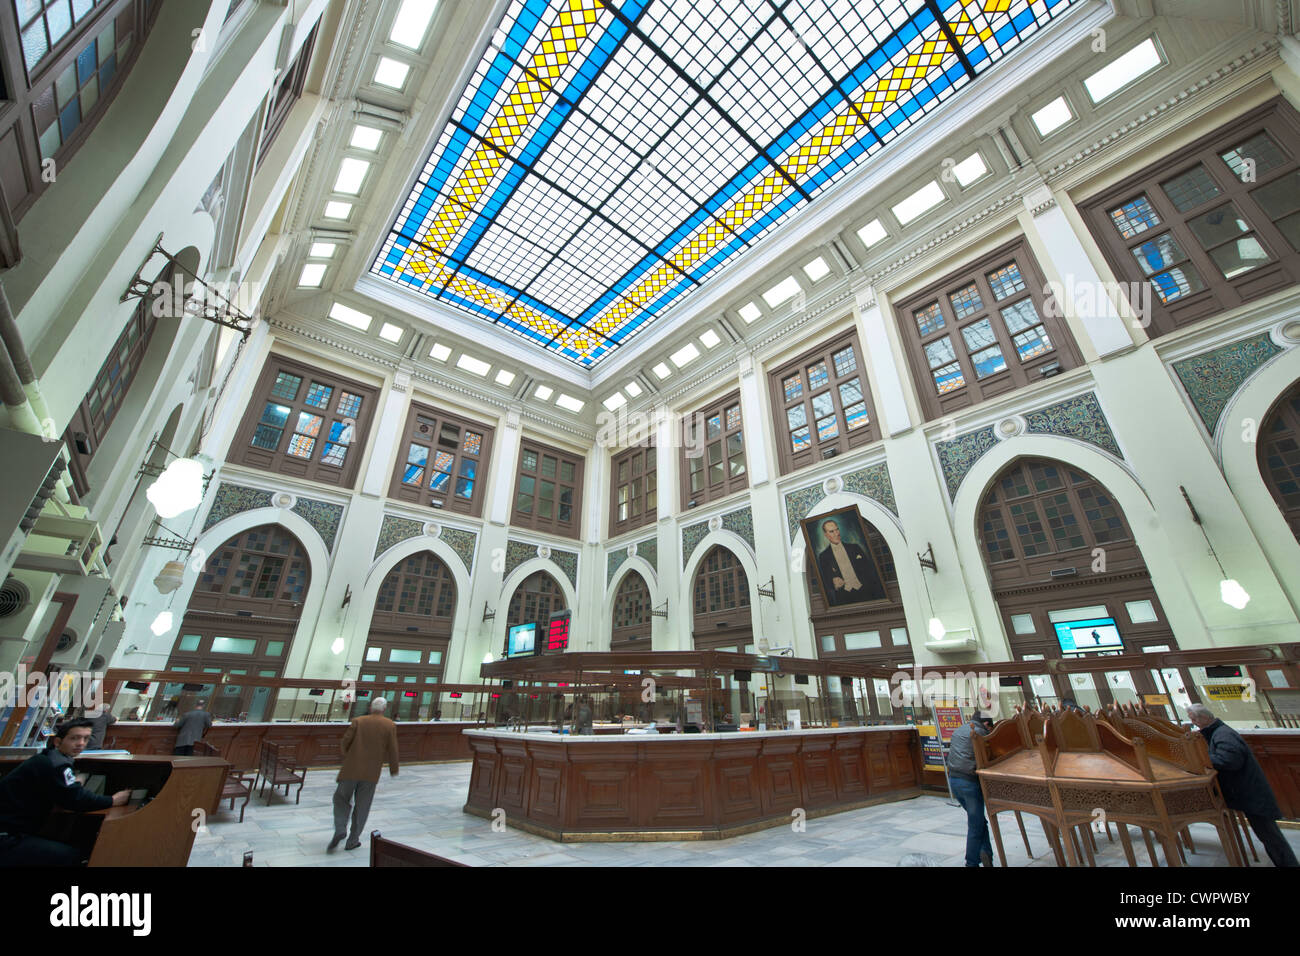 Türkei, Istanbul, Sirkeci, Schalterhalle mit farbigem Glasdach im Hauptpostamt. Stock Photo